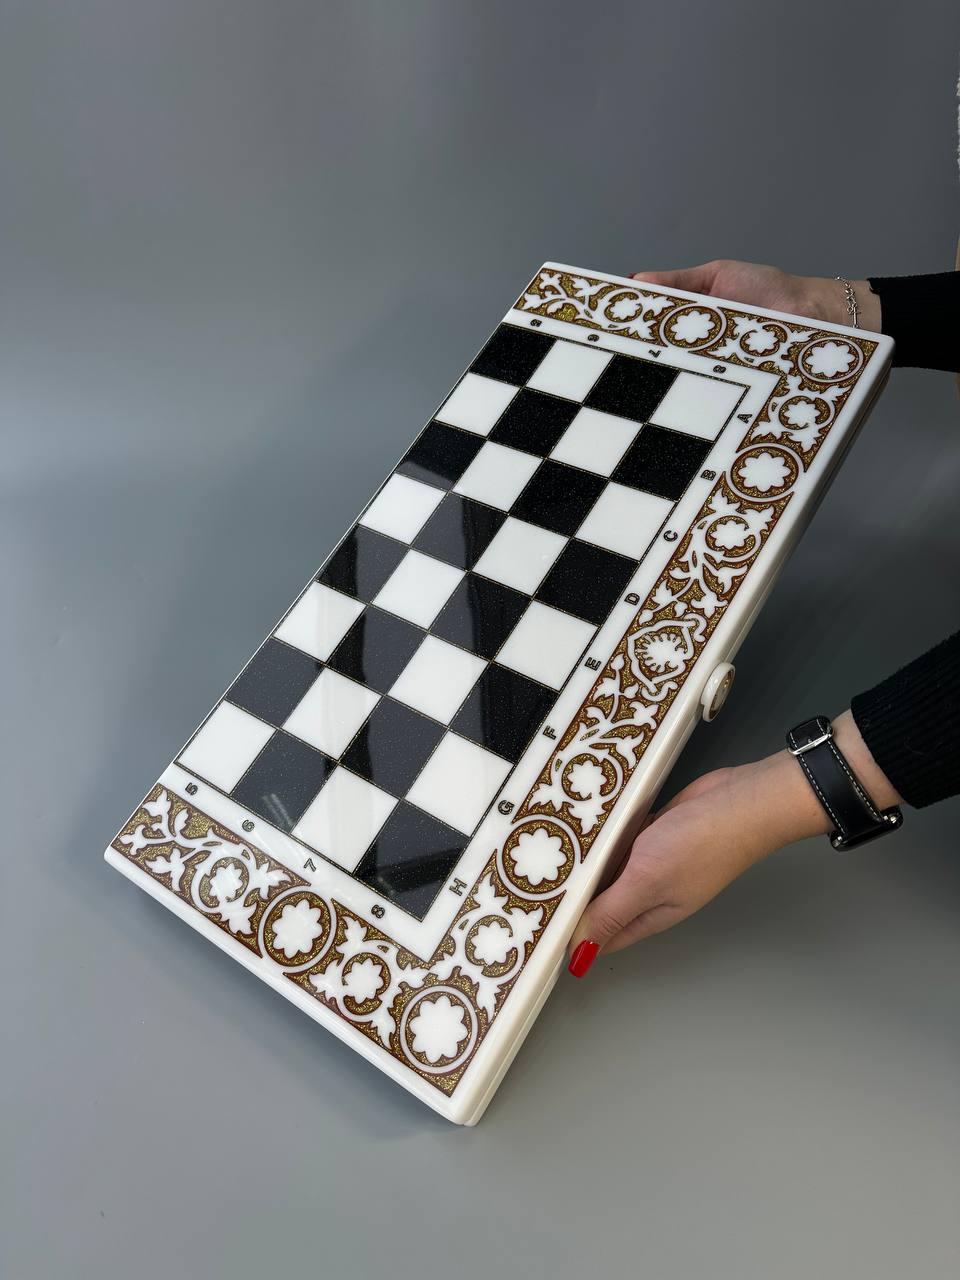 Розкішні шахи, шашки, нарди - набір 3 в 1 із білого акрилового каменю 58*28*5 см, арт.190644